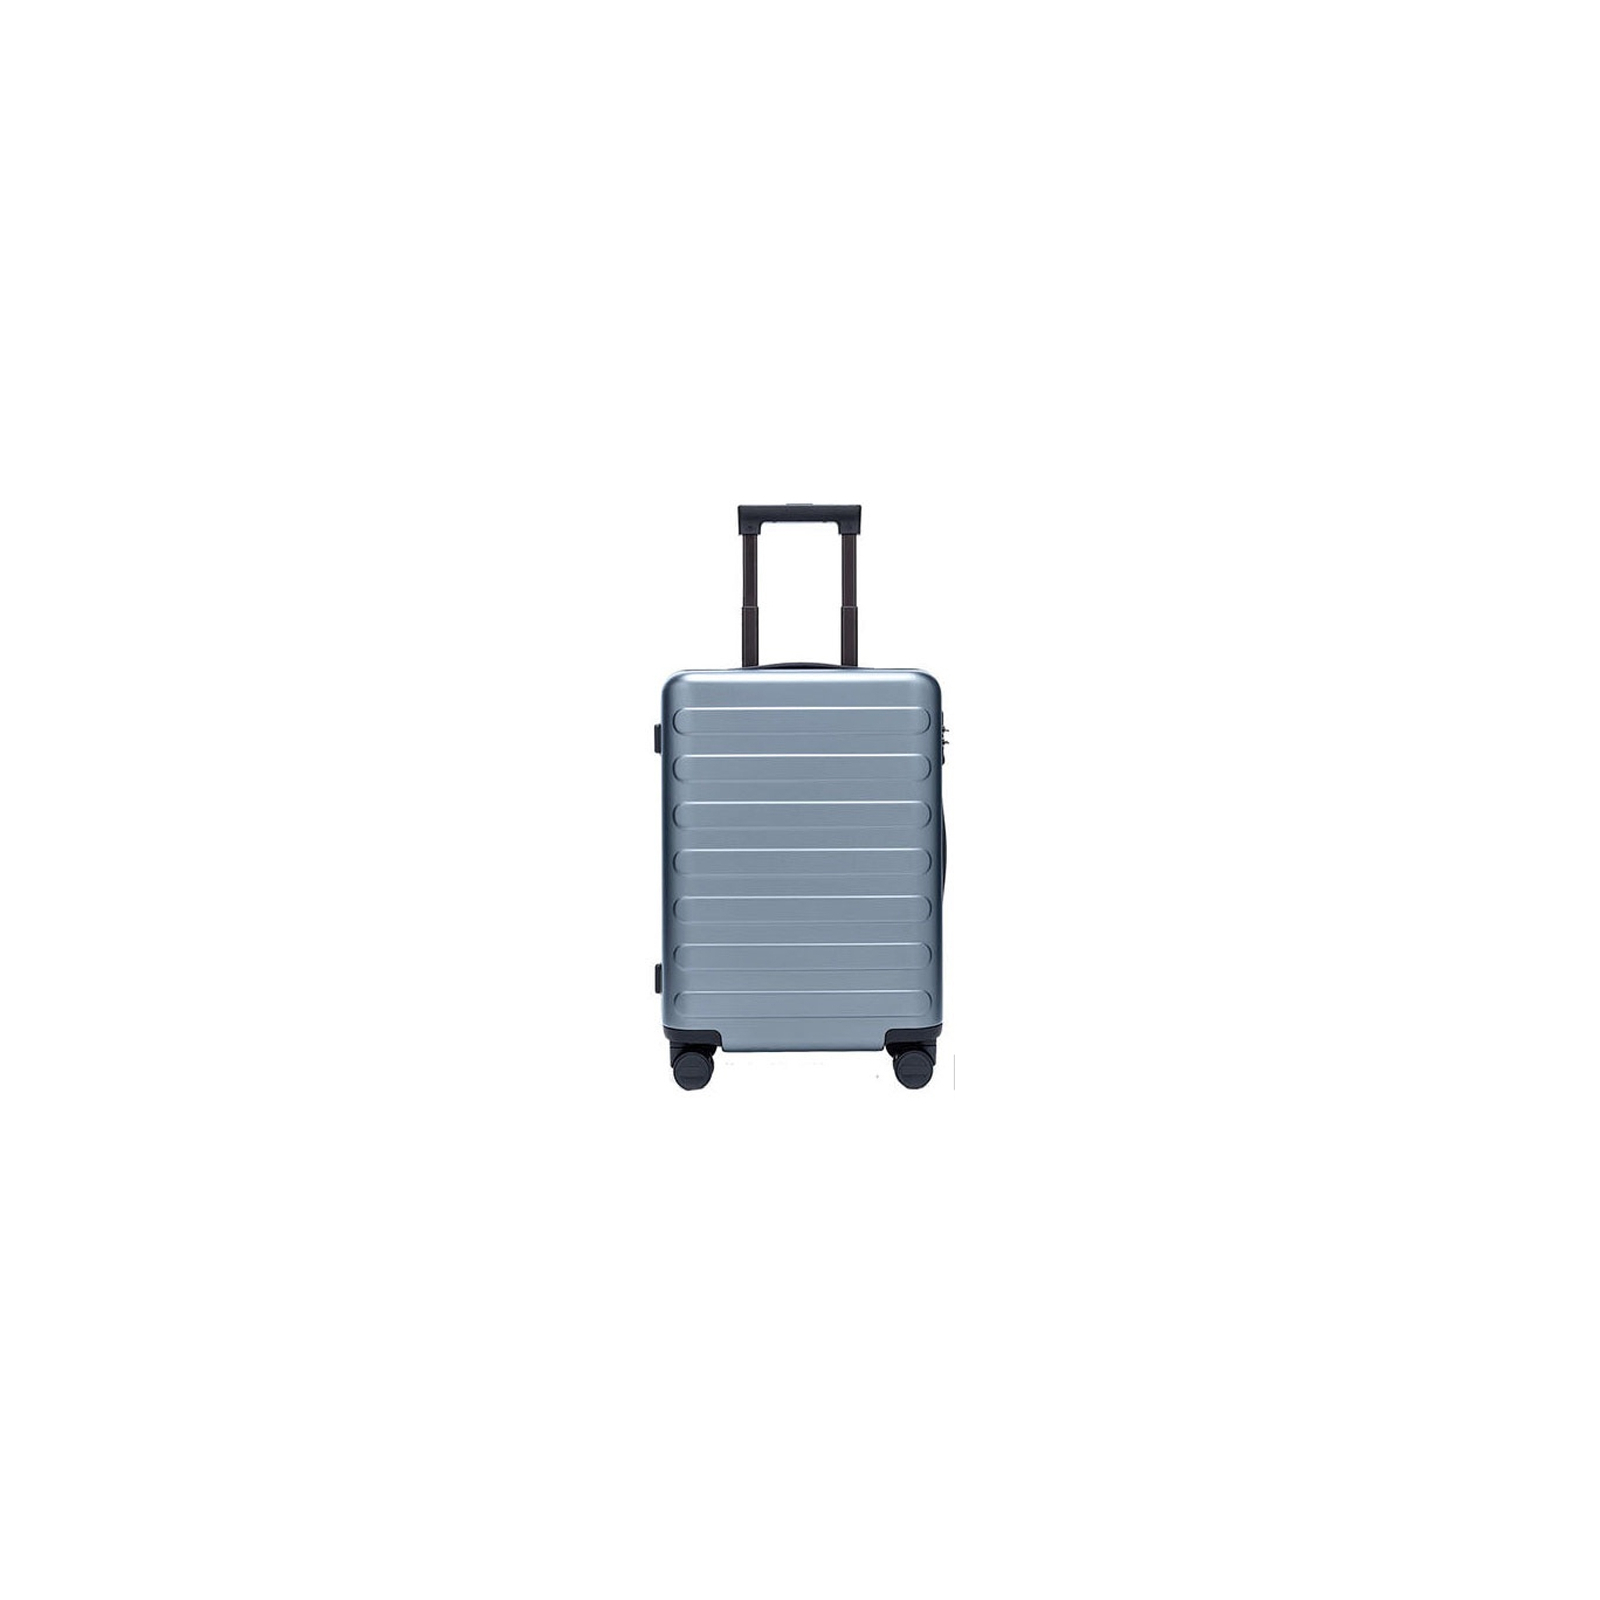 Чемодан Xiaomi Ninetygo Business Travel Luggage 20" Black (6970055346672)